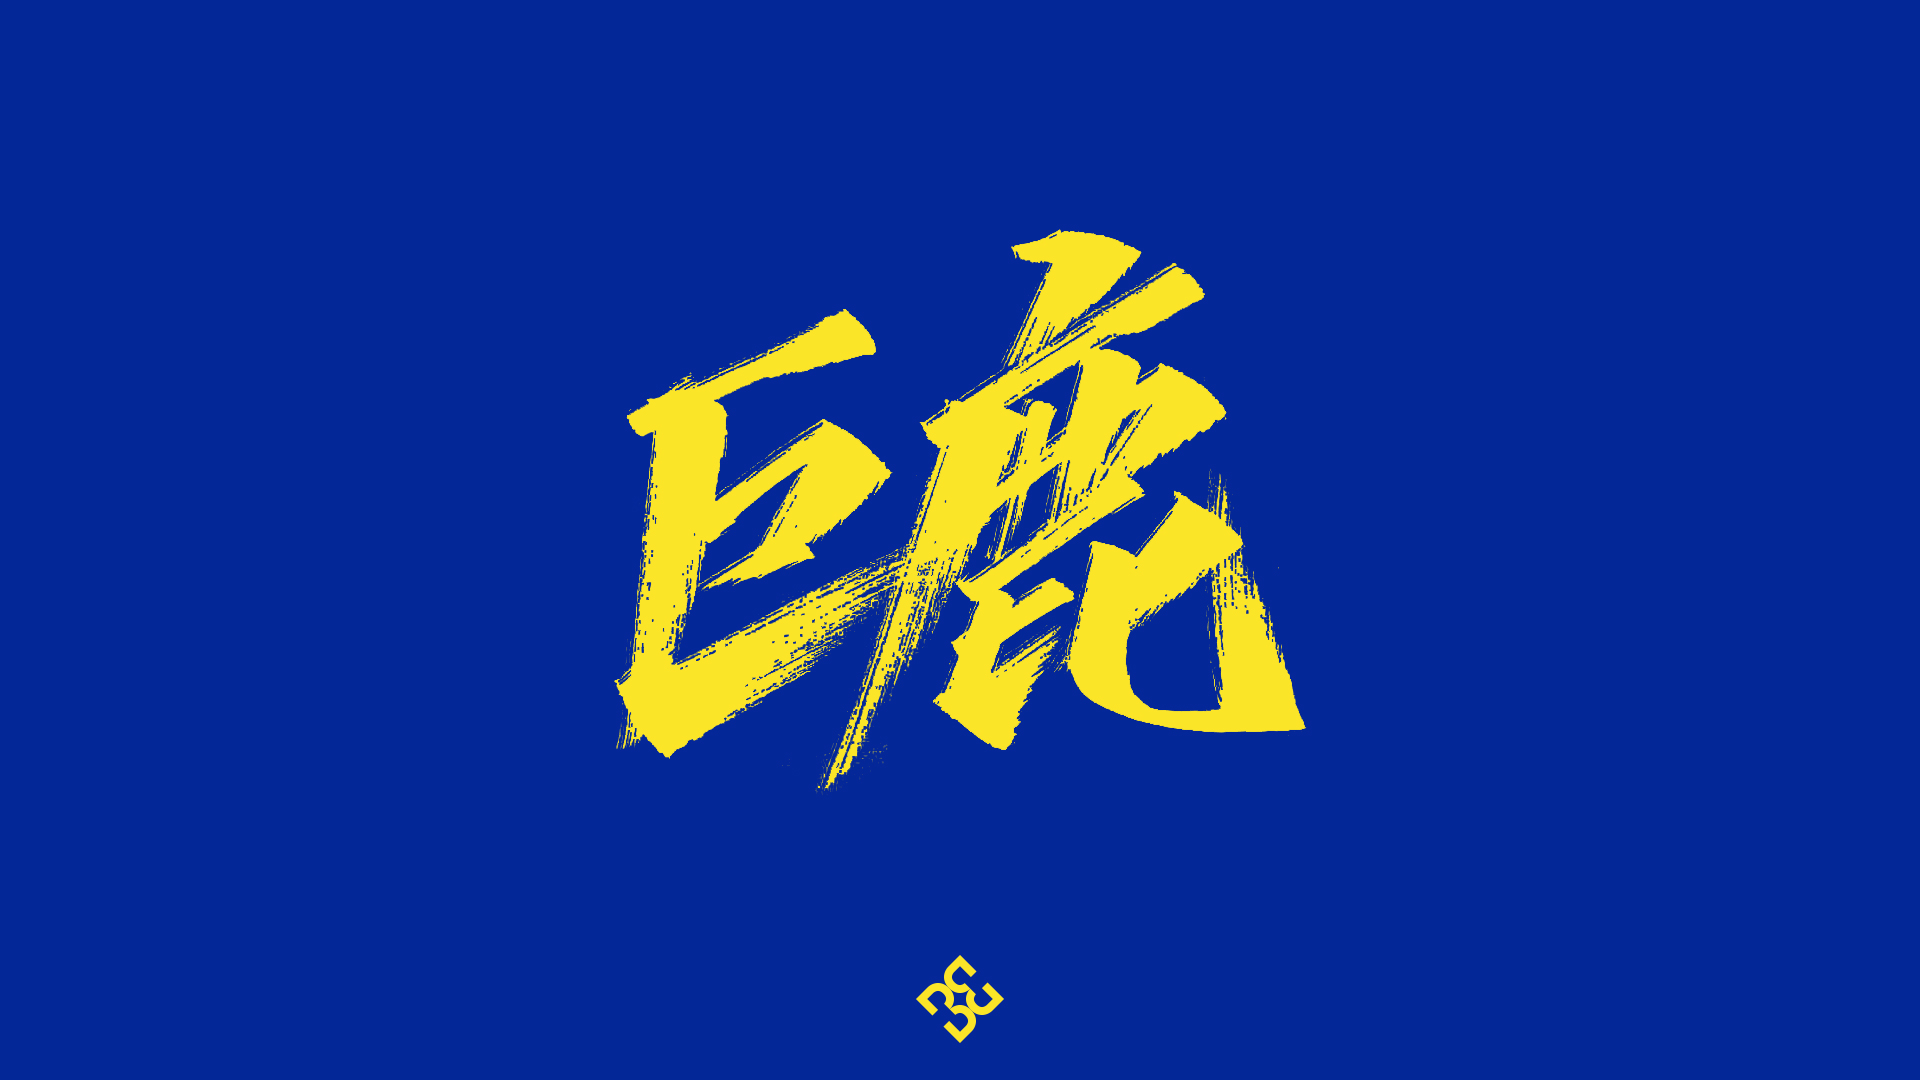 Writing brush font design-Hua Chenyu songs